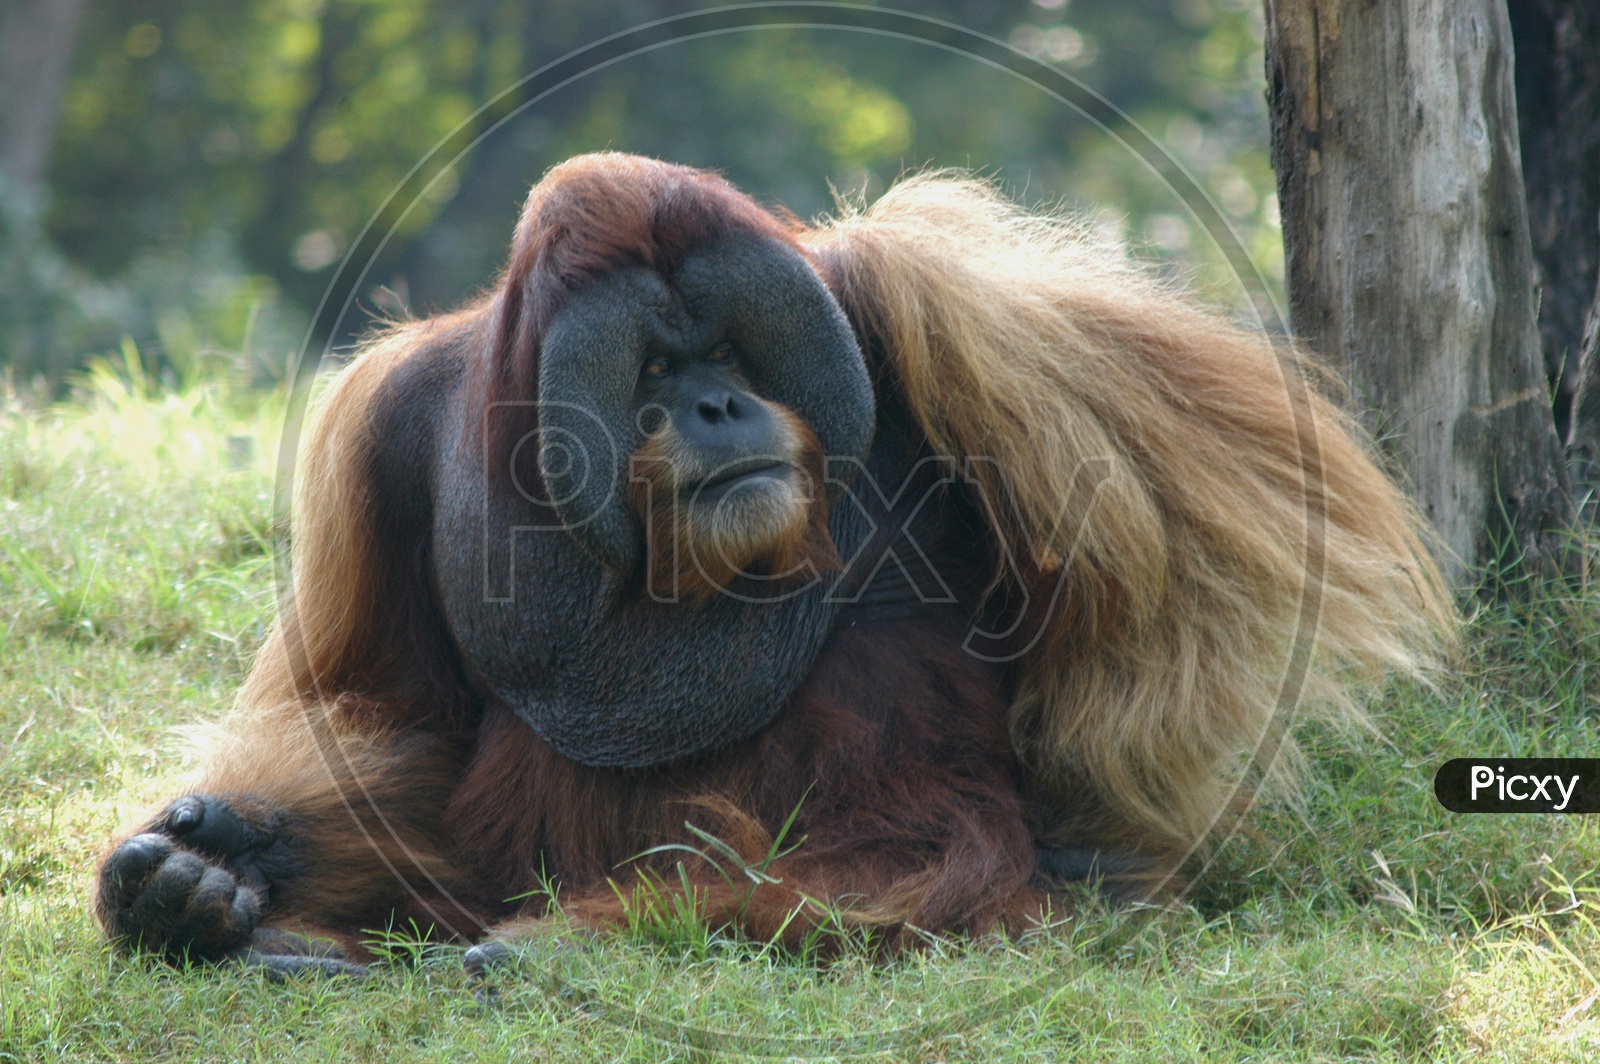 A Orangutan